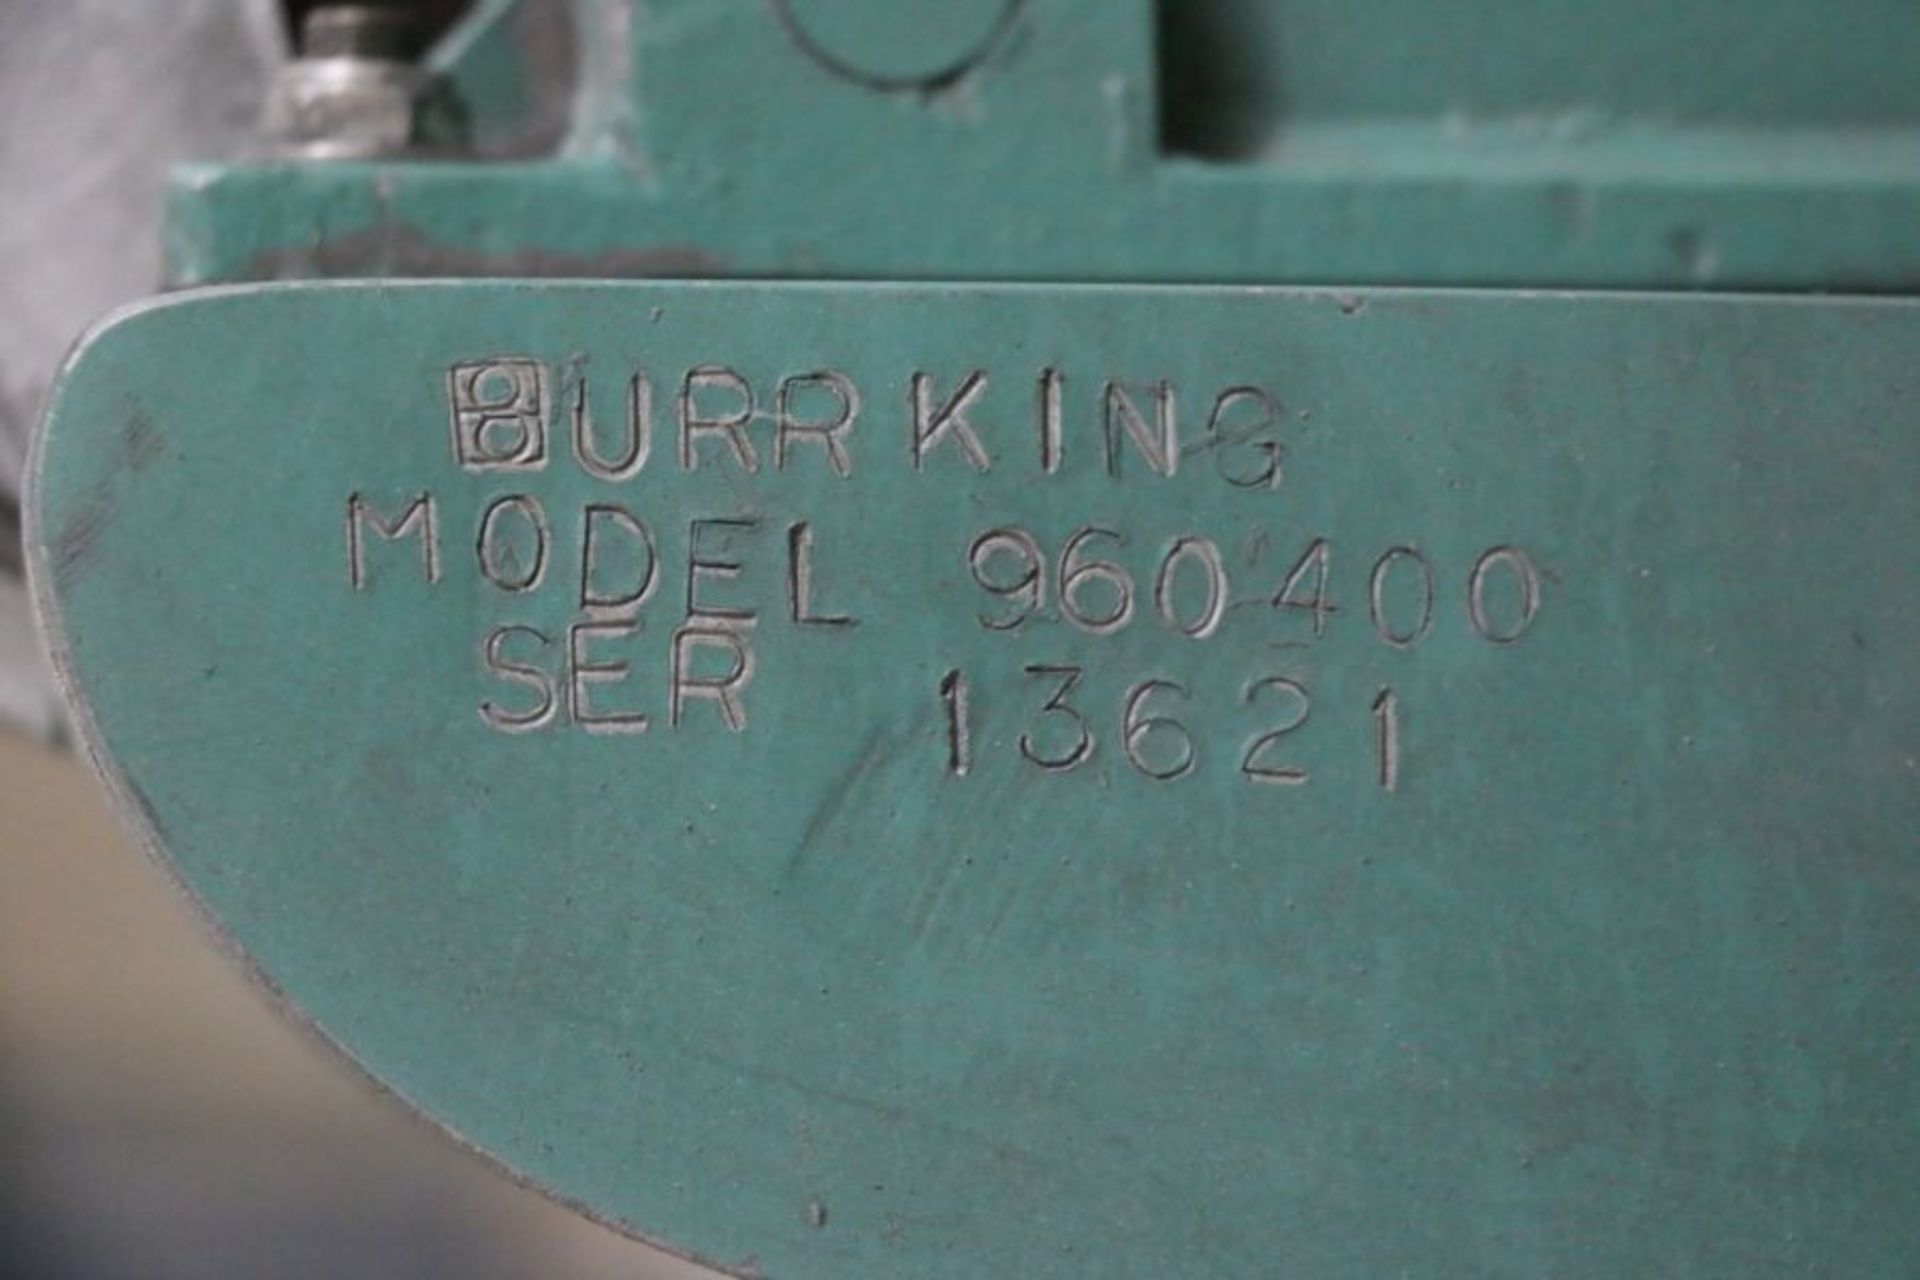 Burr King 960 400 Vertical Belt Sander, s/n 13621 - Image 4 of 4